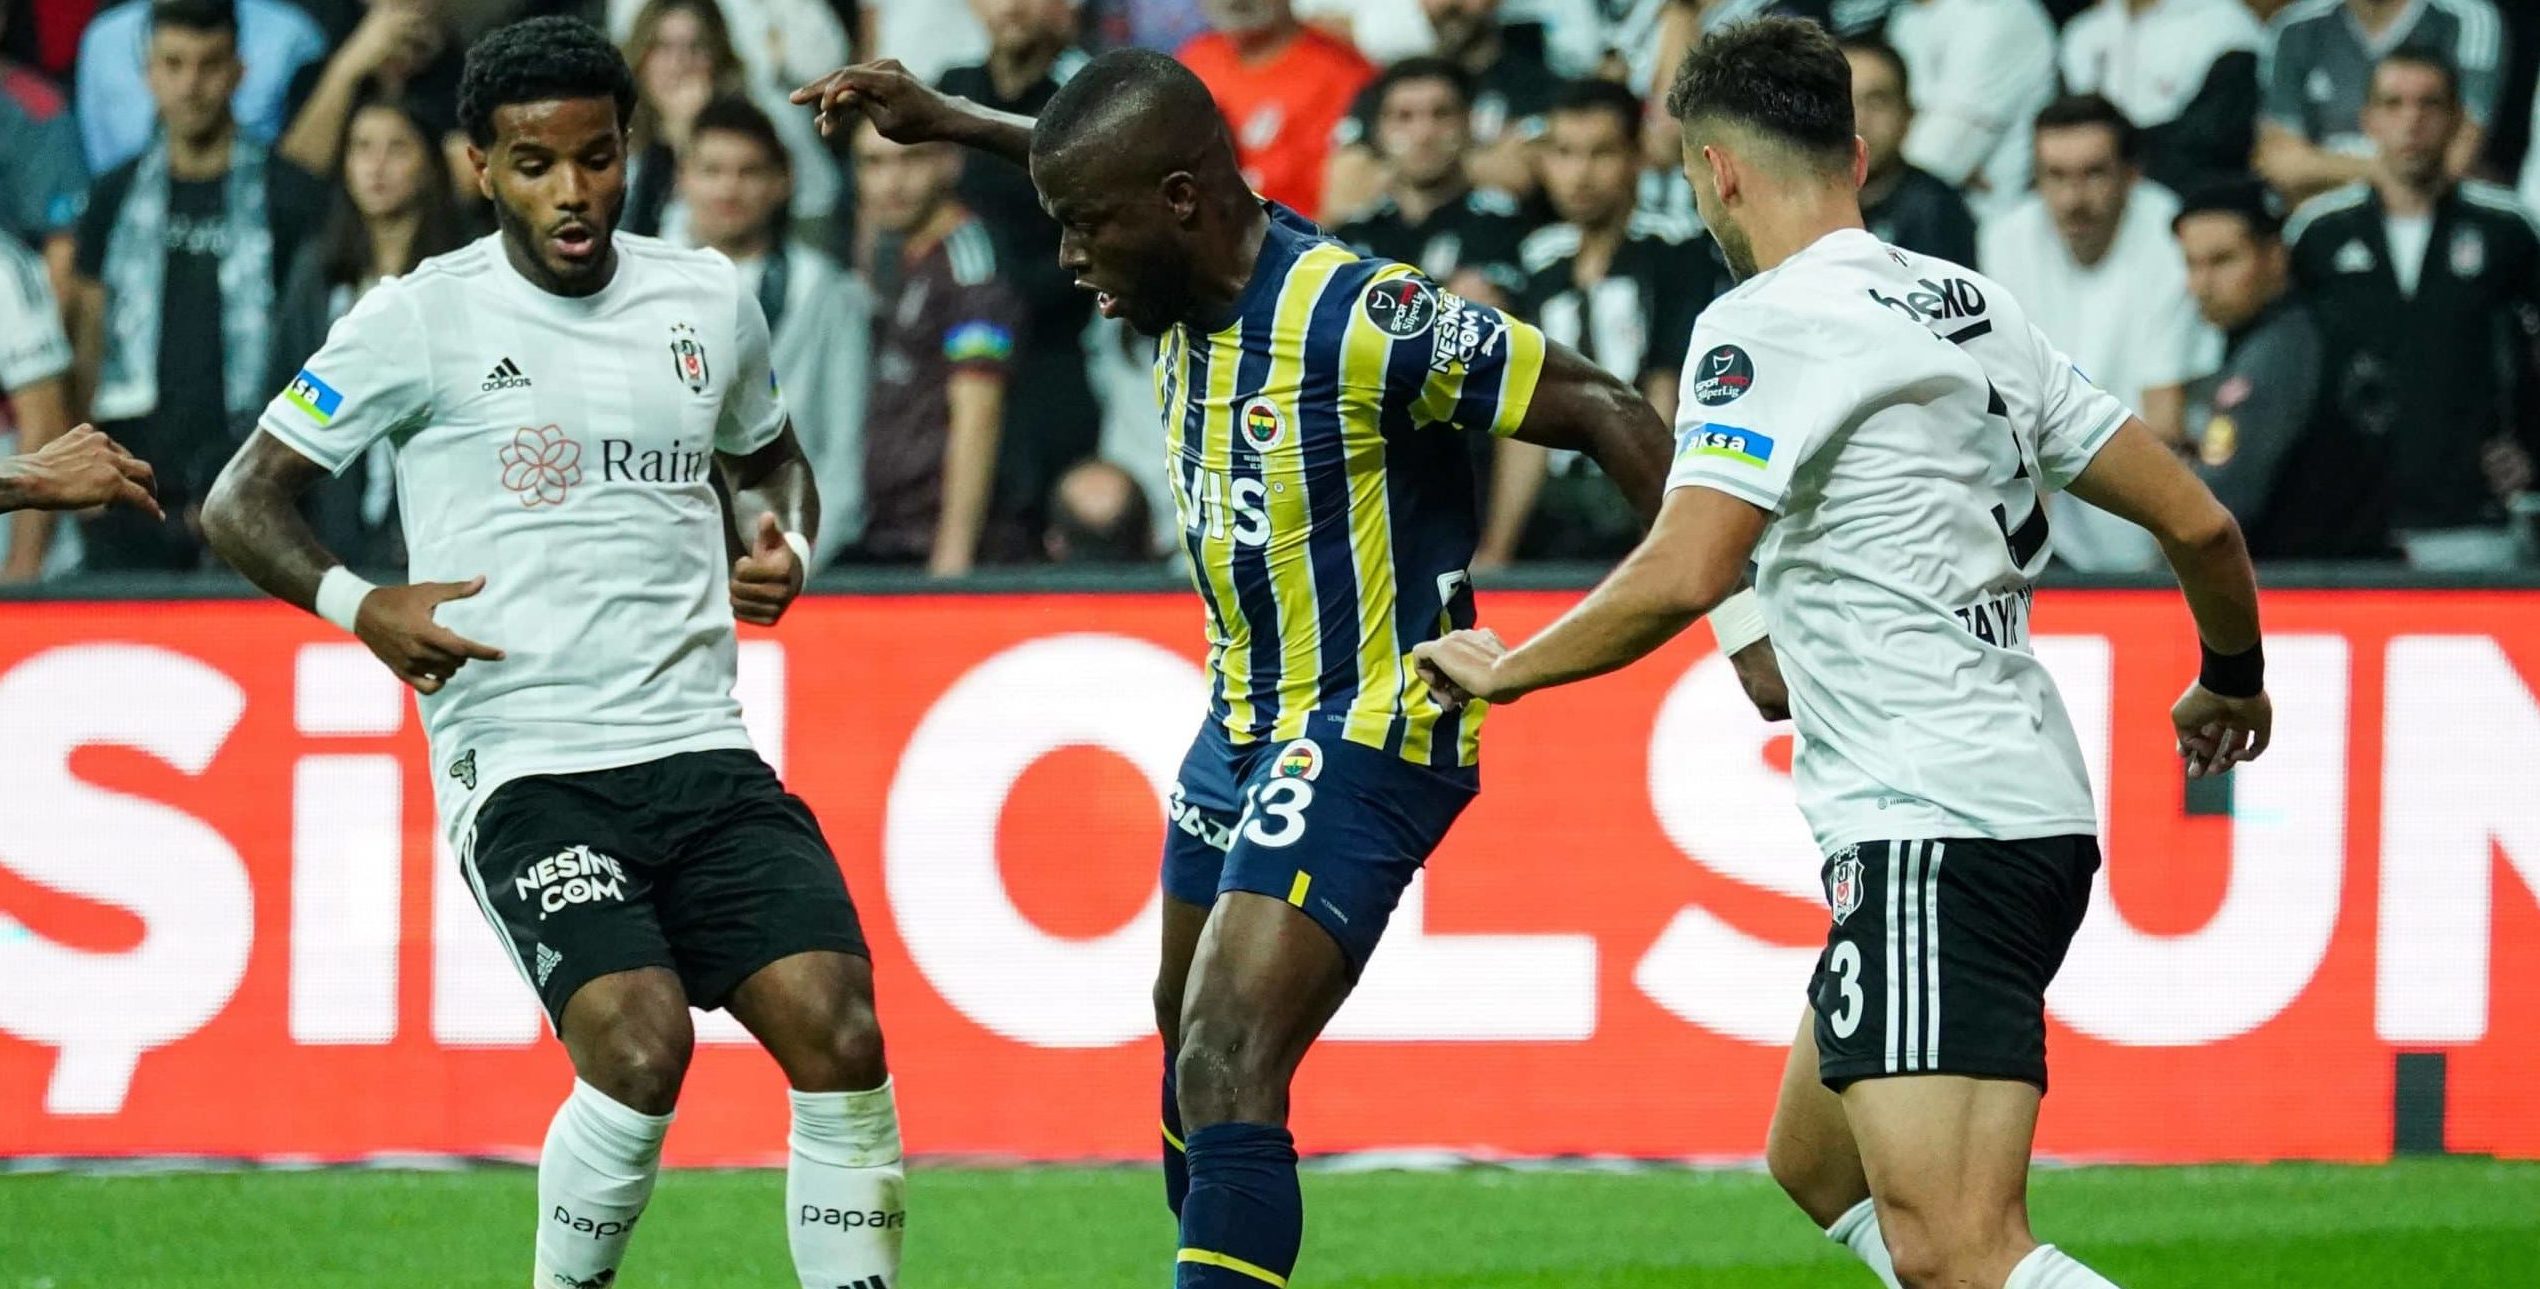 Ankaragücü vs Fenerbahçe: A Turbulent Football Rivalry